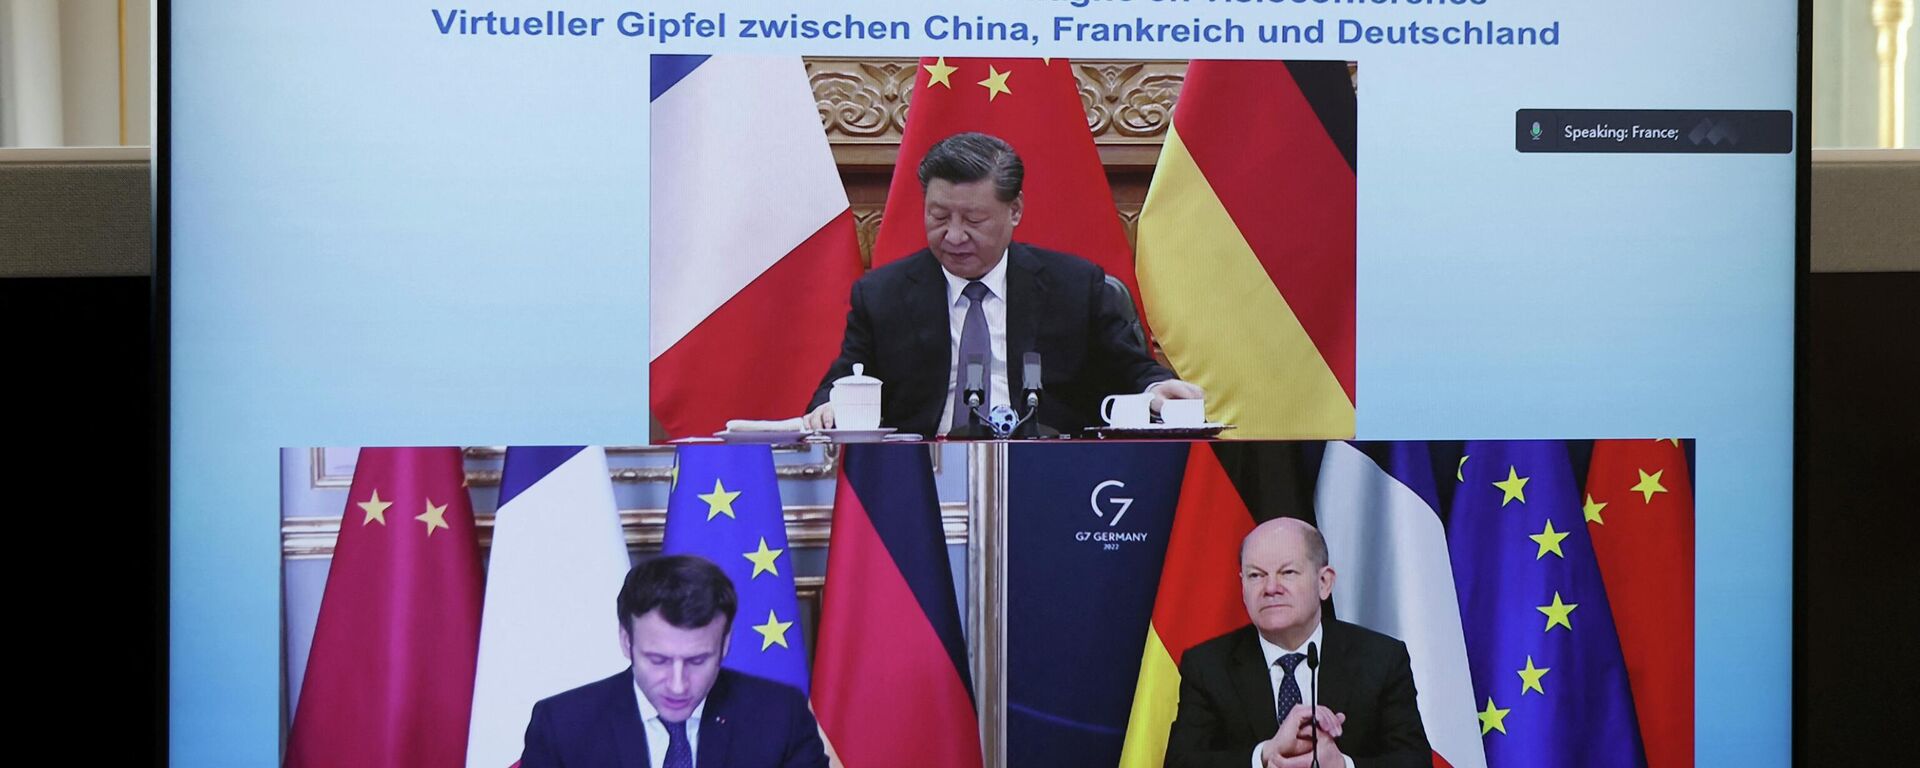 Presidente francês, Emmanuel Macron, chanceler alemão, Olaf Scholz, e presidente chinês, Xi Jinping, discutem a crise da Ucrânia durante videoconferência, registrada no Palácio do Eliseu, em Paris, em 8 de março de 2022 - Sputnik Brasil, 1920, 10.05.2022